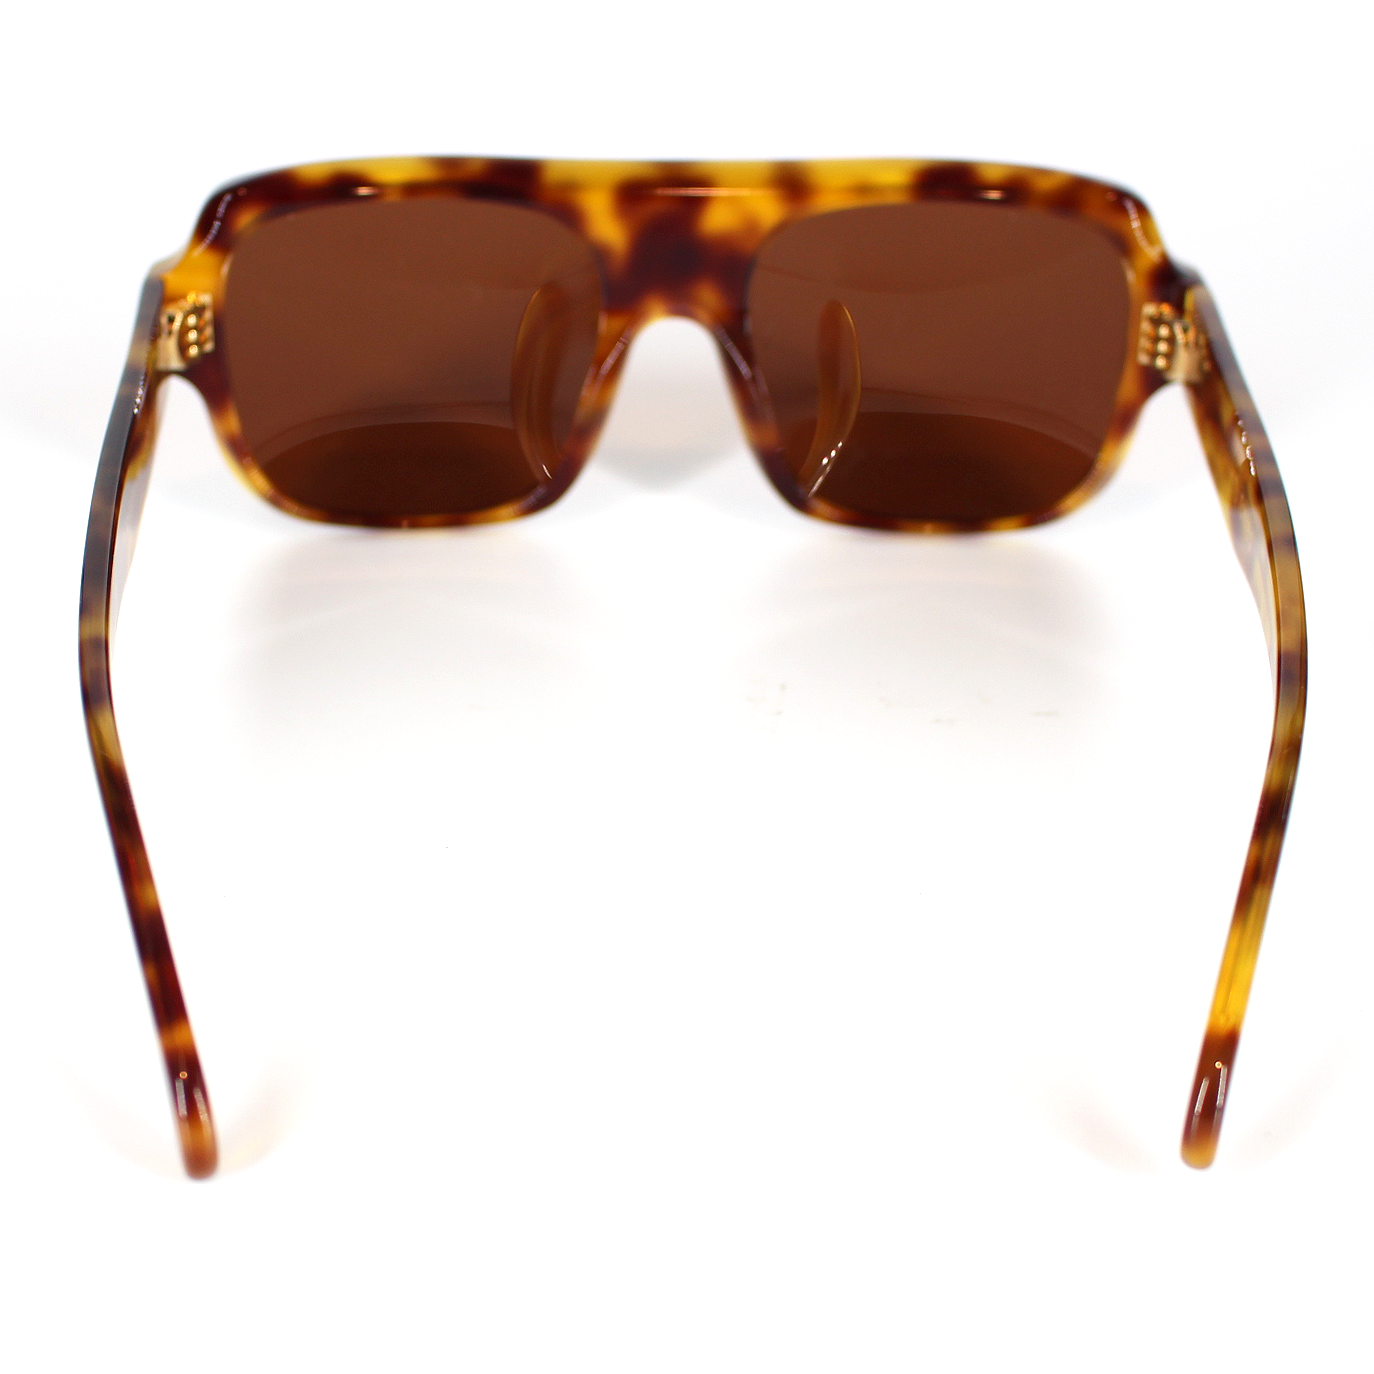 Anine Bing Sicily Tortoiseshell Sunglasses